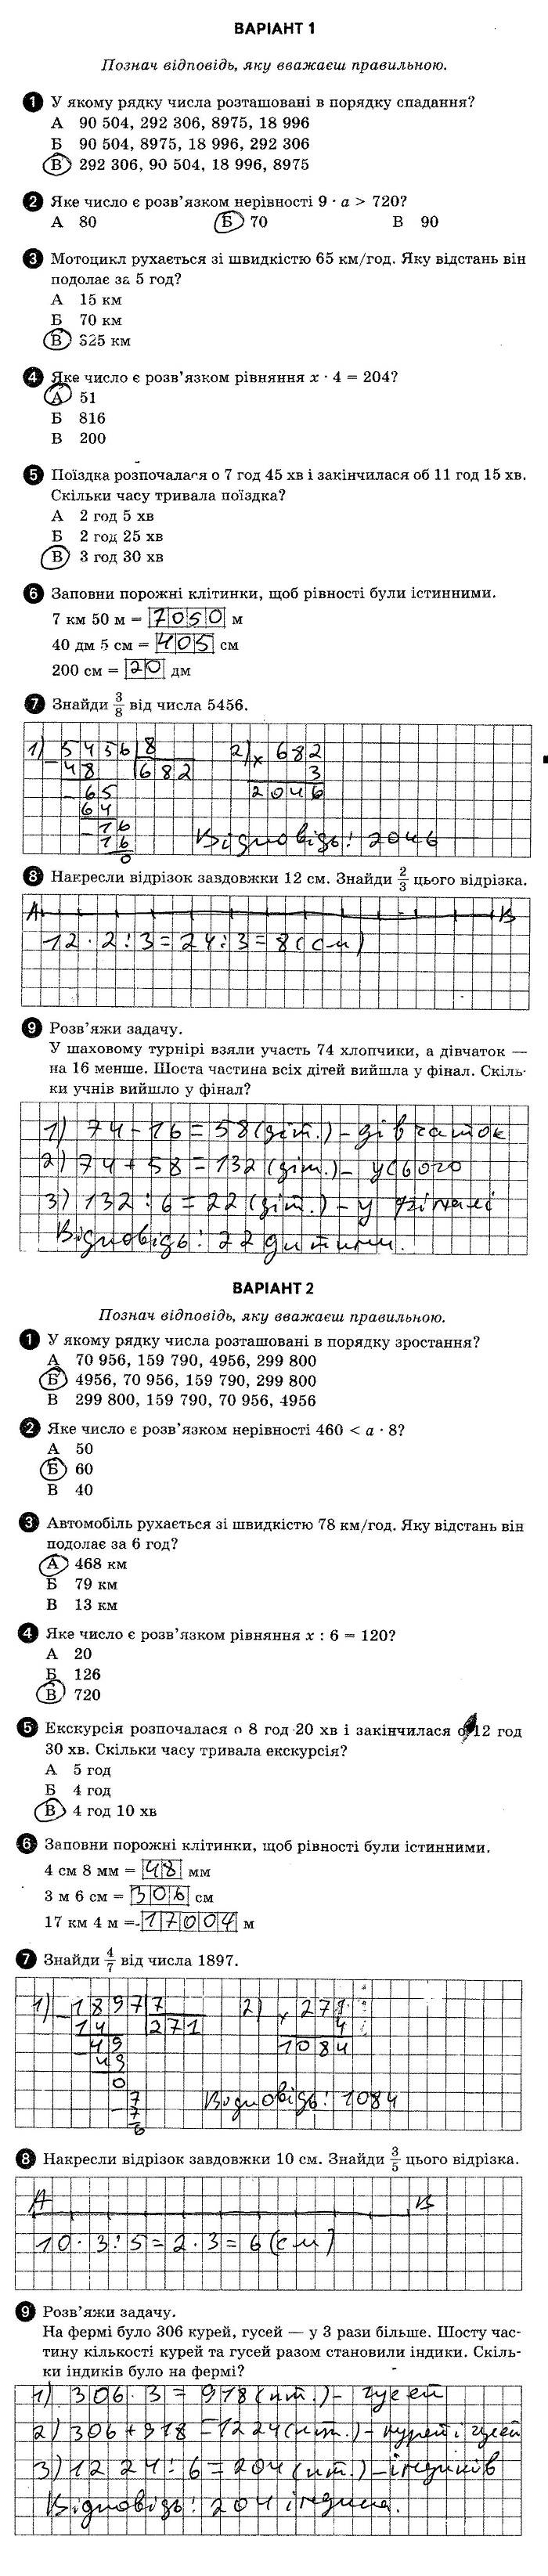 ГДЗ (відповіді) Тестова контрольна робота 8 4 клас ДПА-2020 Математика Шевченко (підсумкові контрольні роботи)